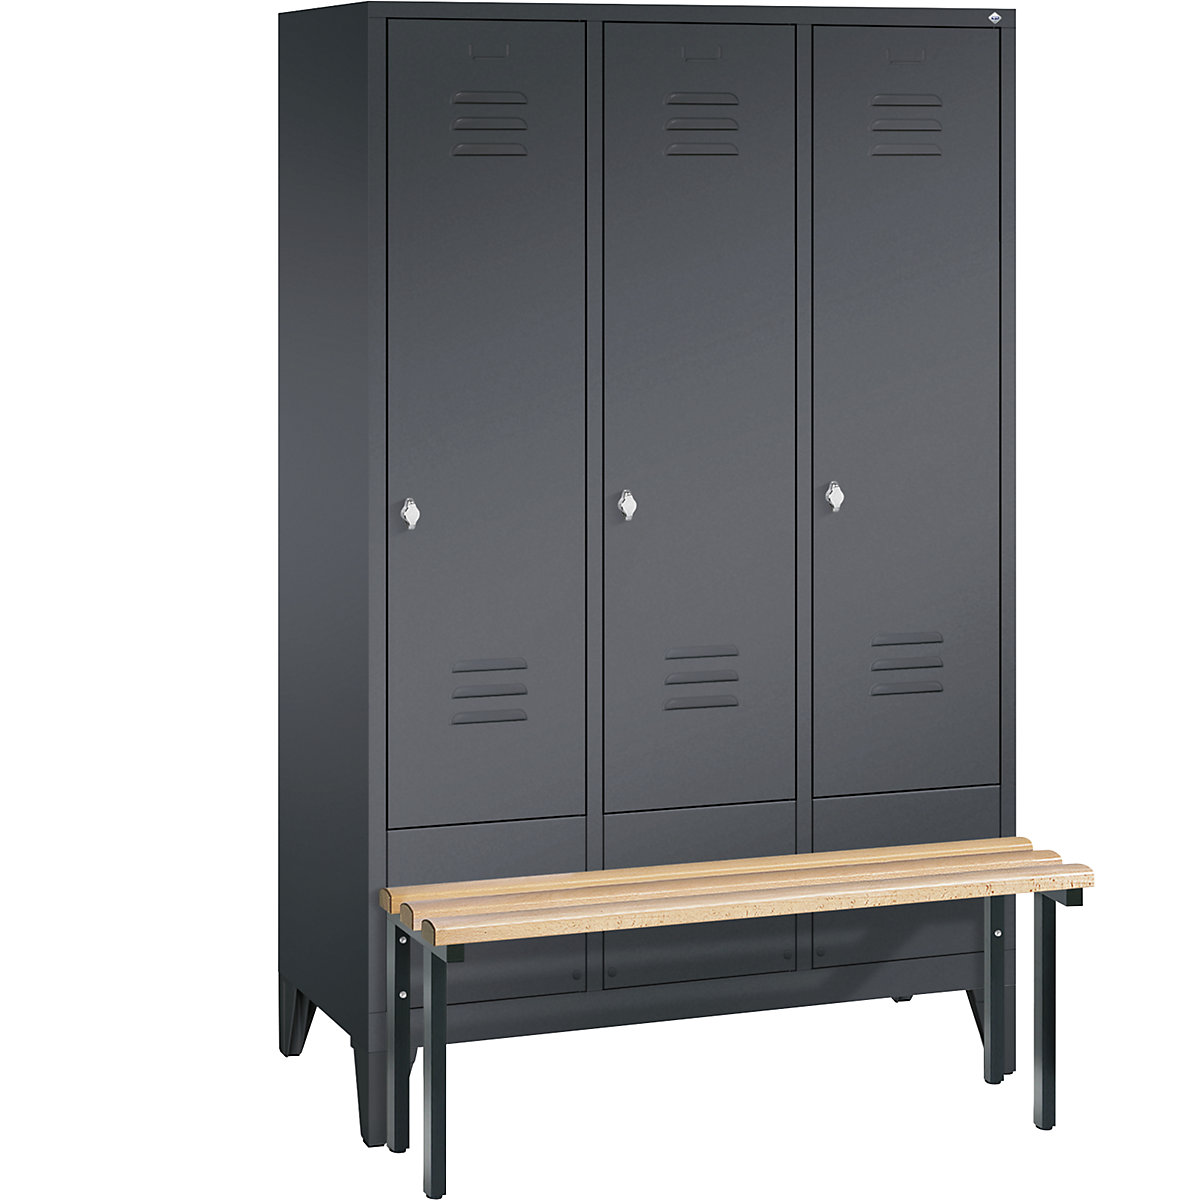 Garderobna omara CLASSIC s klopjo – C+P, 3 predelki, širina 400 mm/predelek, črno sive barve-8